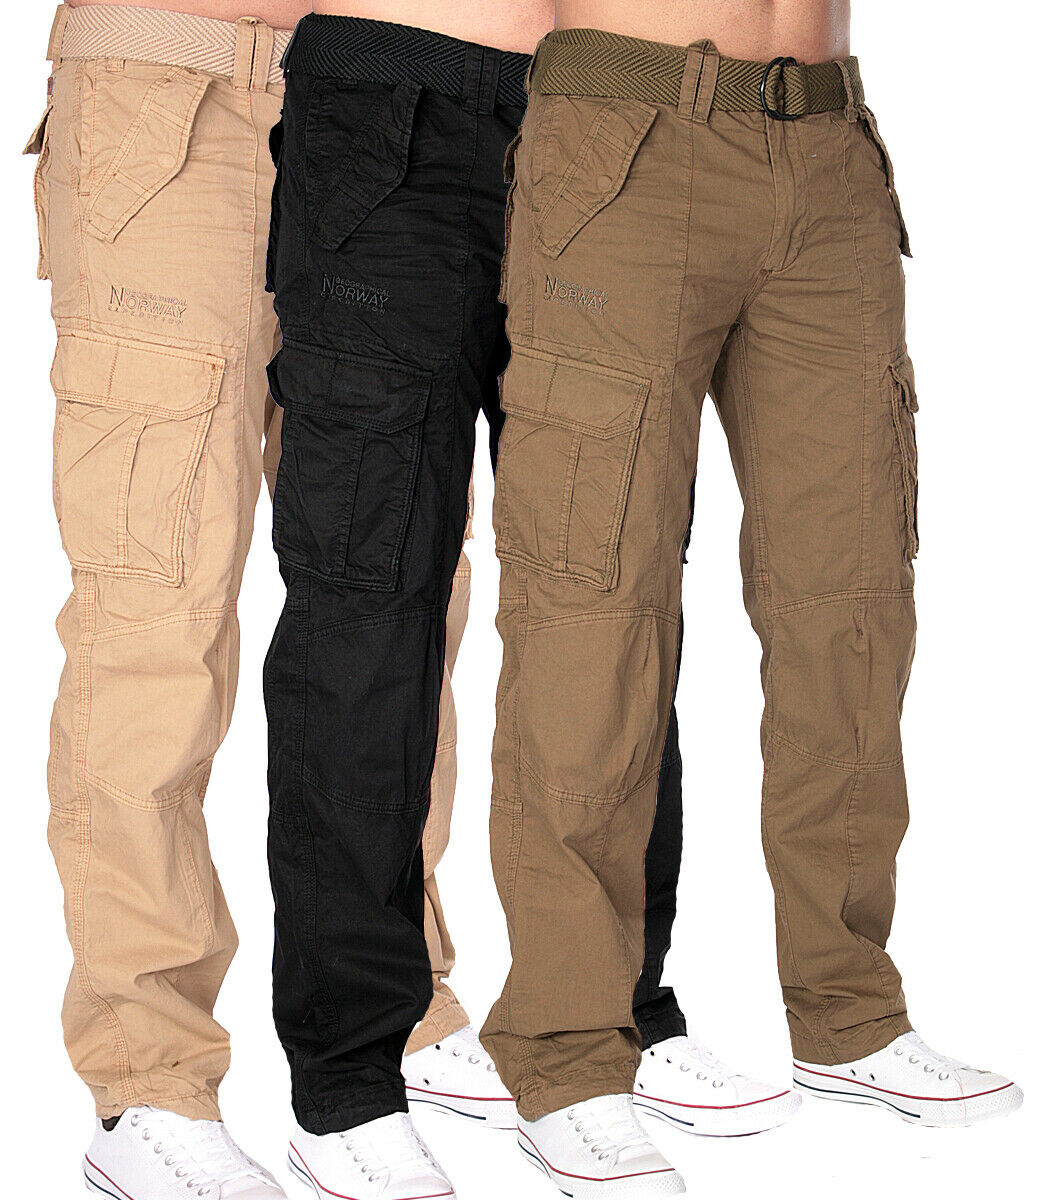 Классические мужские брюки (63 фото): зауженные, широкие или модели с защипами